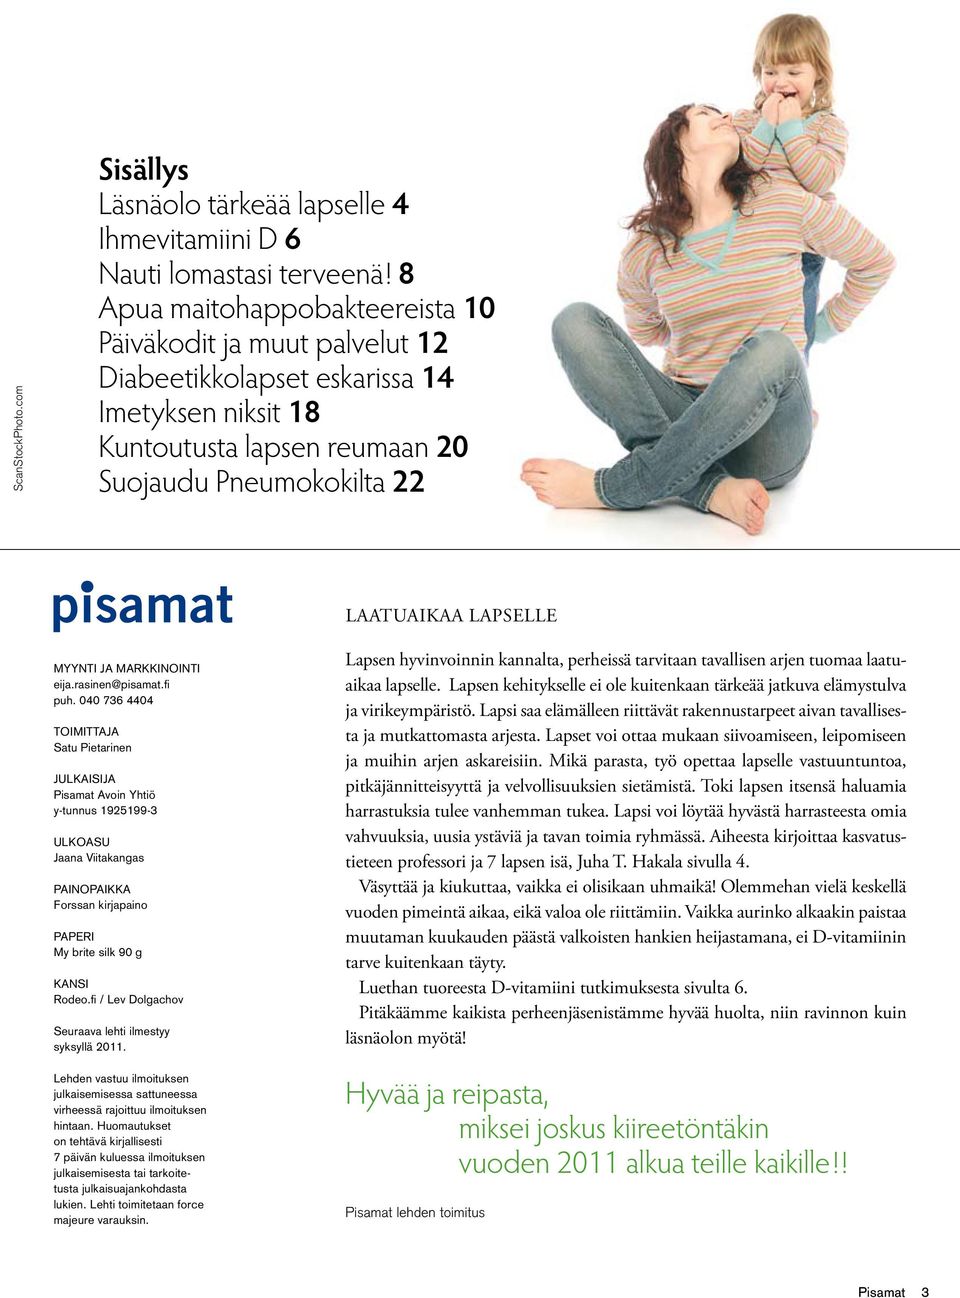 ja markkinointi eija.rasinen@pisamat.fi puh.